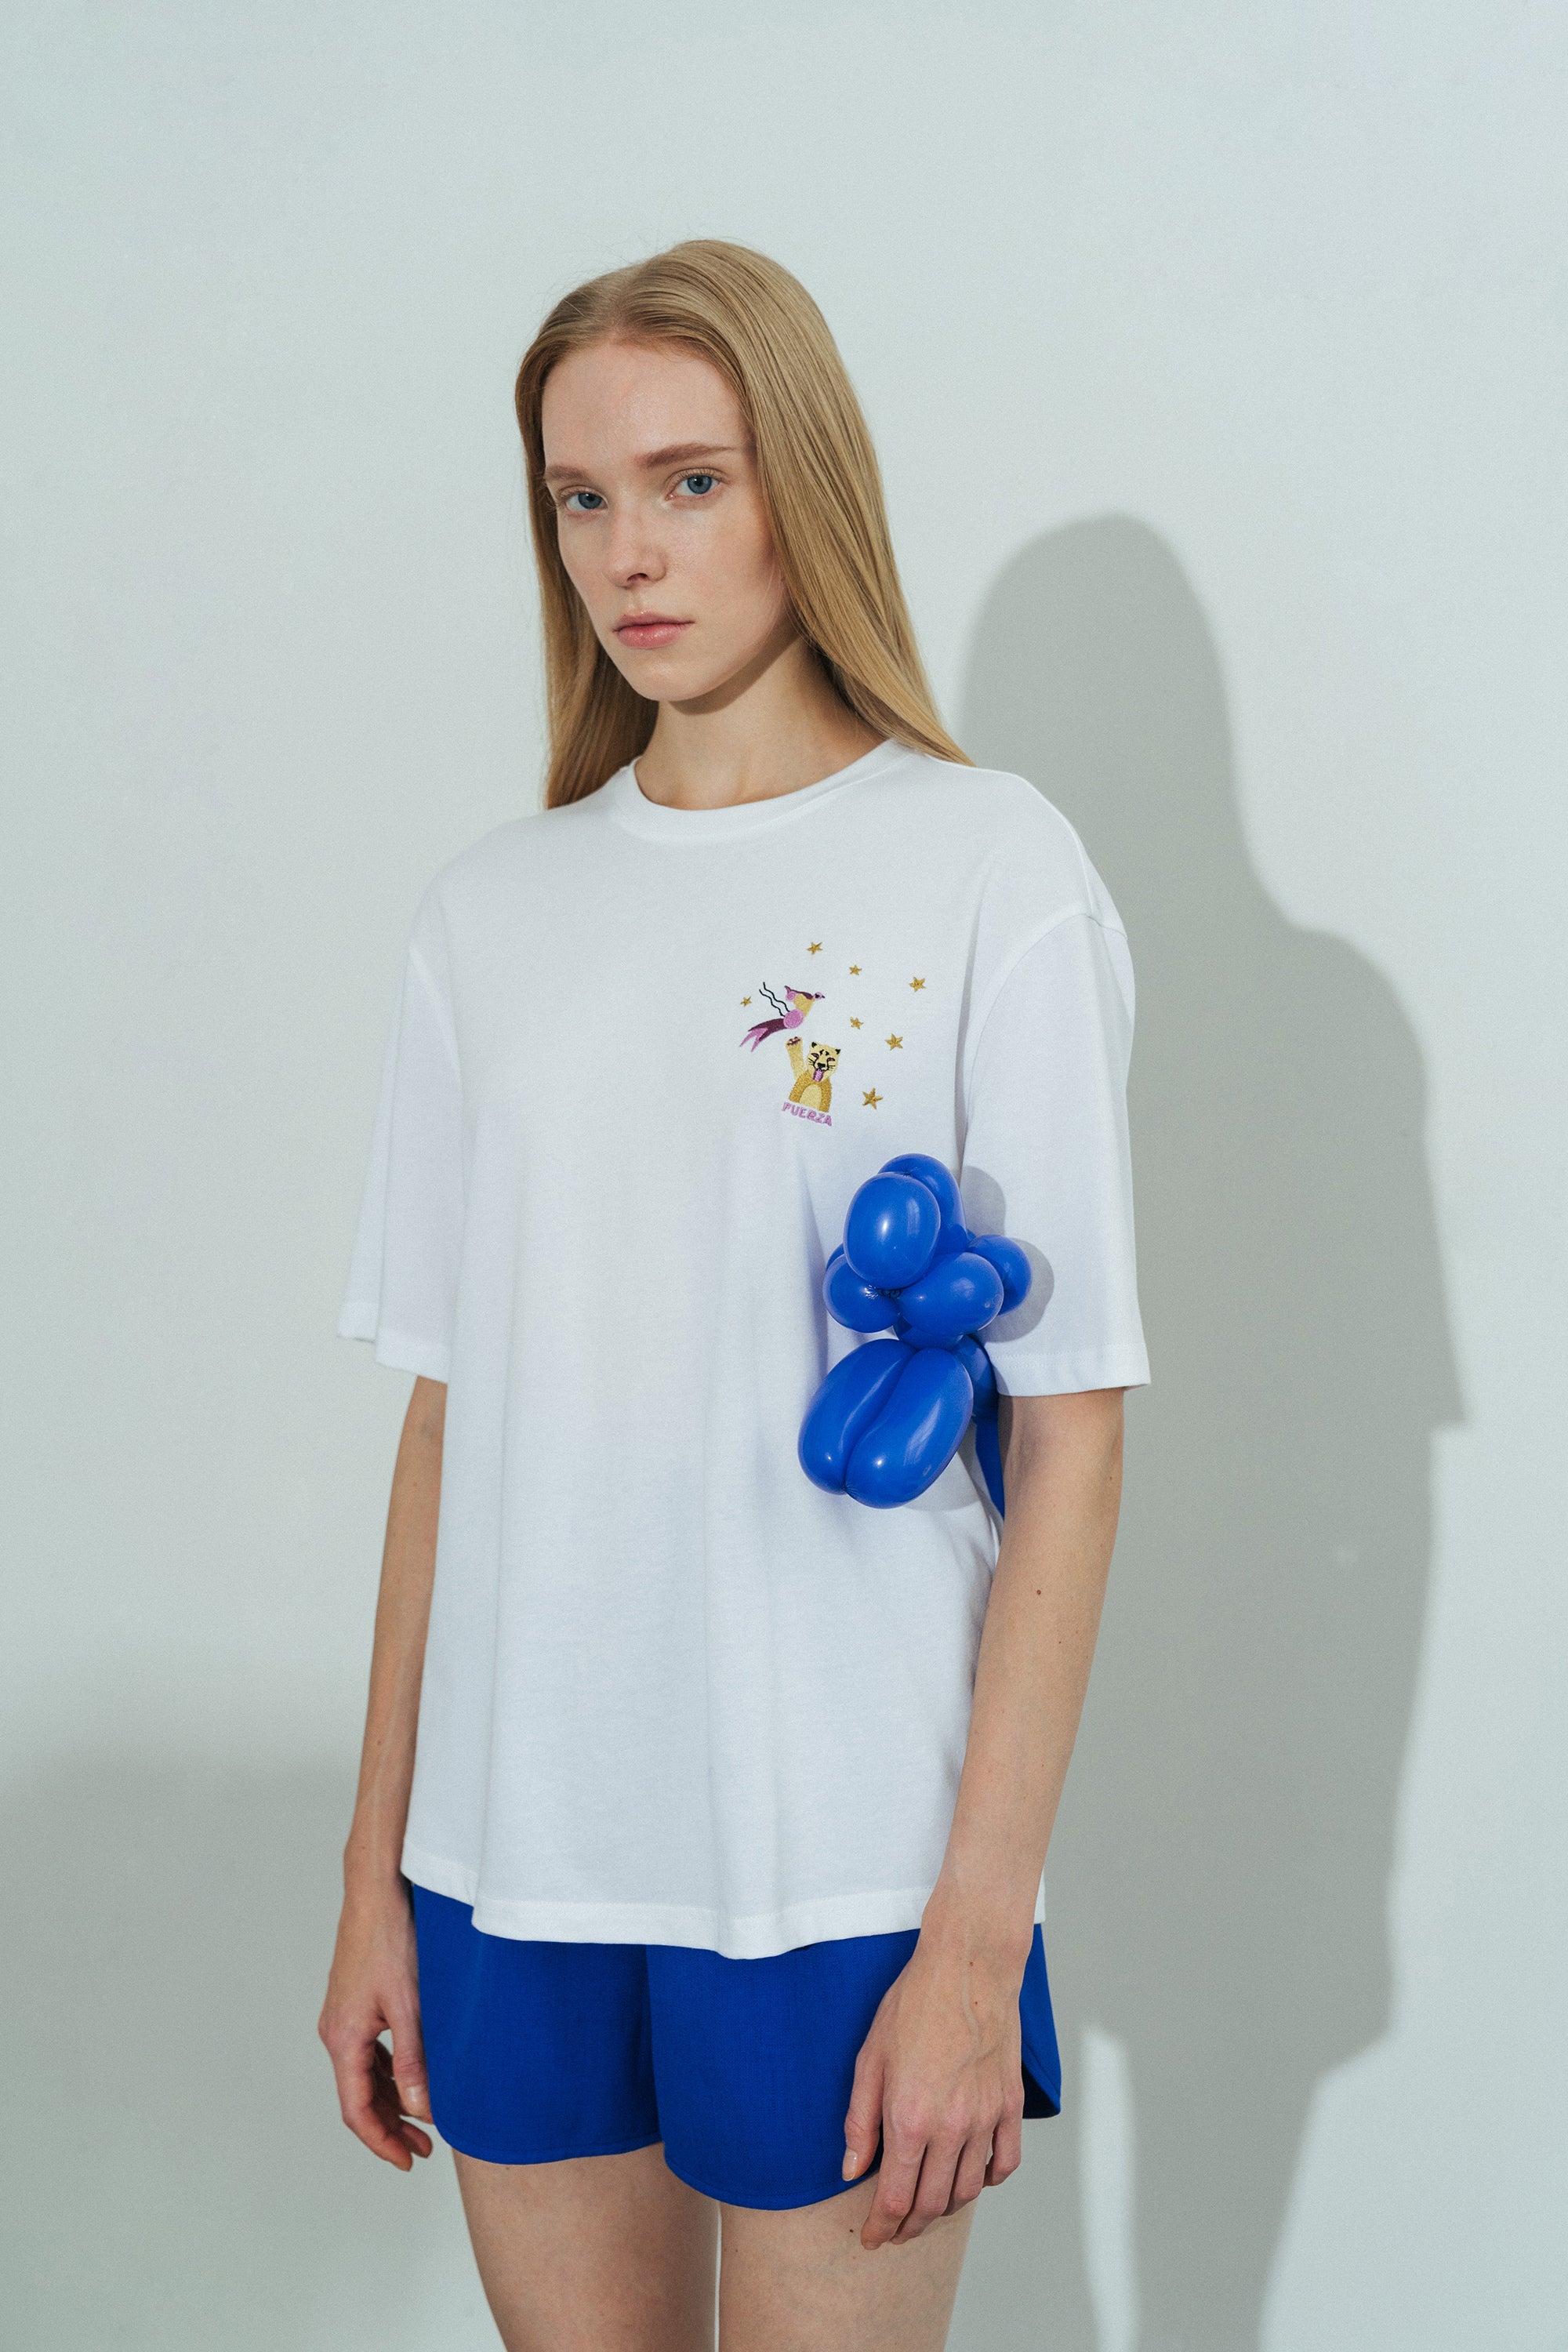 Shantall Lacayo x Lost Pattern Embroidery T-shirt - LOST PATTERN Shirt